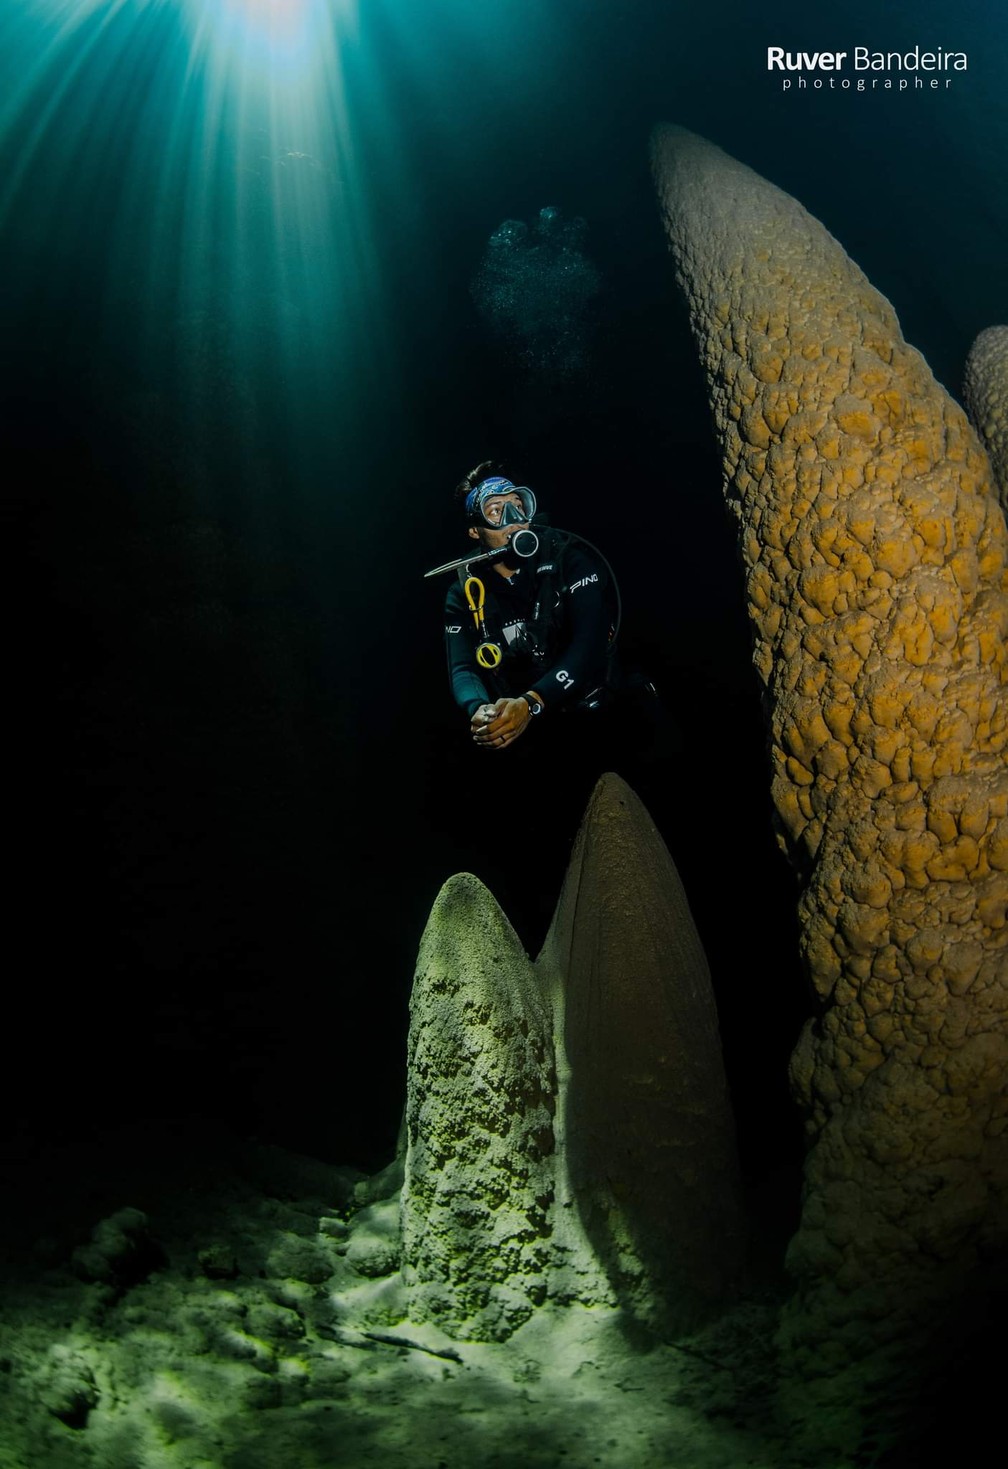 Foto do Abismo Anhumas, selecionada entre as 20 melhores subaquáticas — Foto: Ruver Bandeira/Arquivo pessoal